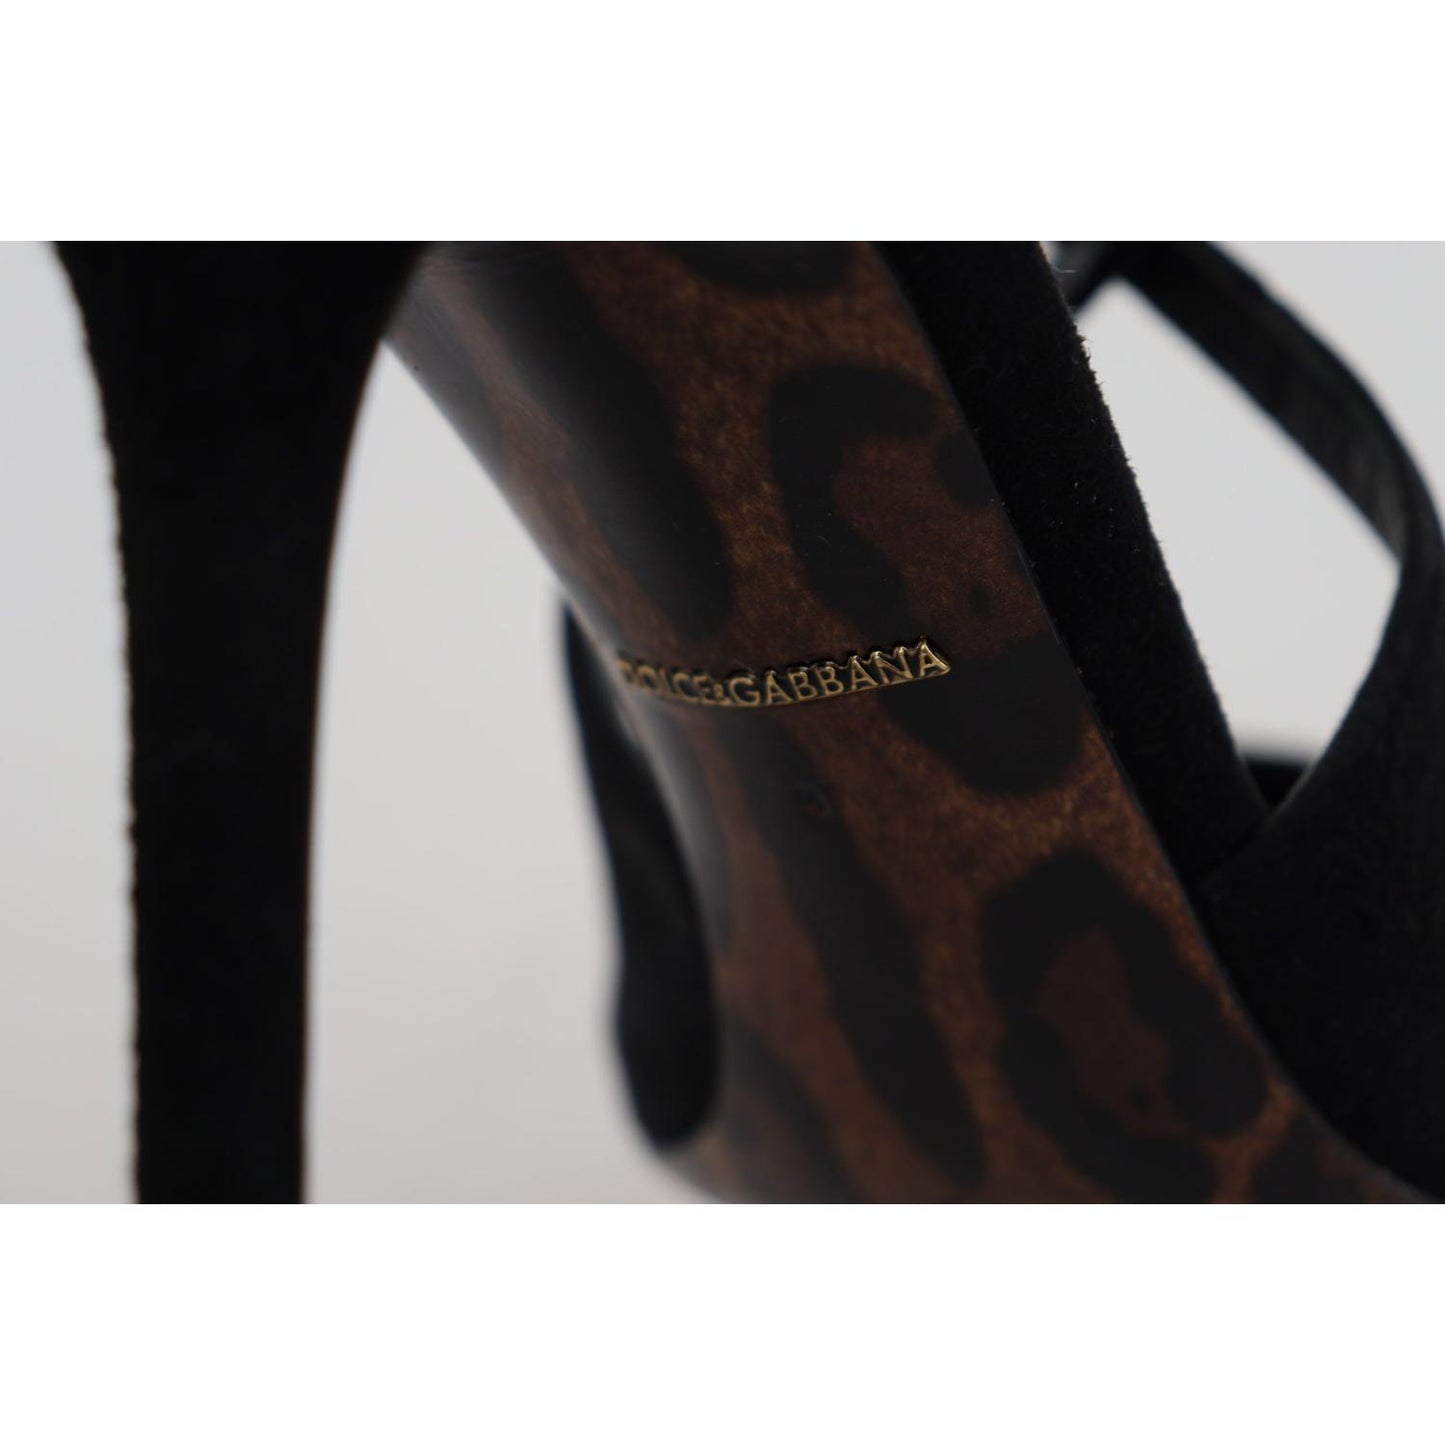 Dolce & Gabbana Elegant Ankle Strap Suede Heels black-suede-ankle-strap-pumps-heels-shoes